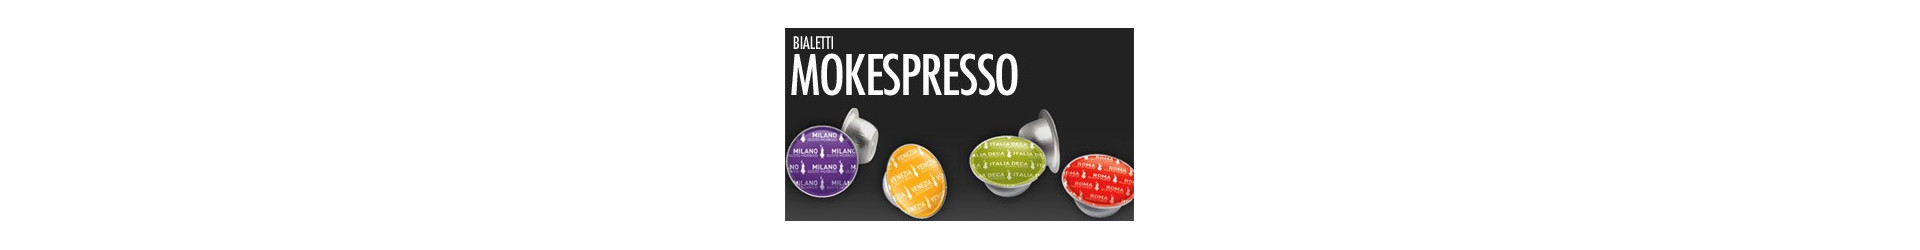 Bialetti mokespresso